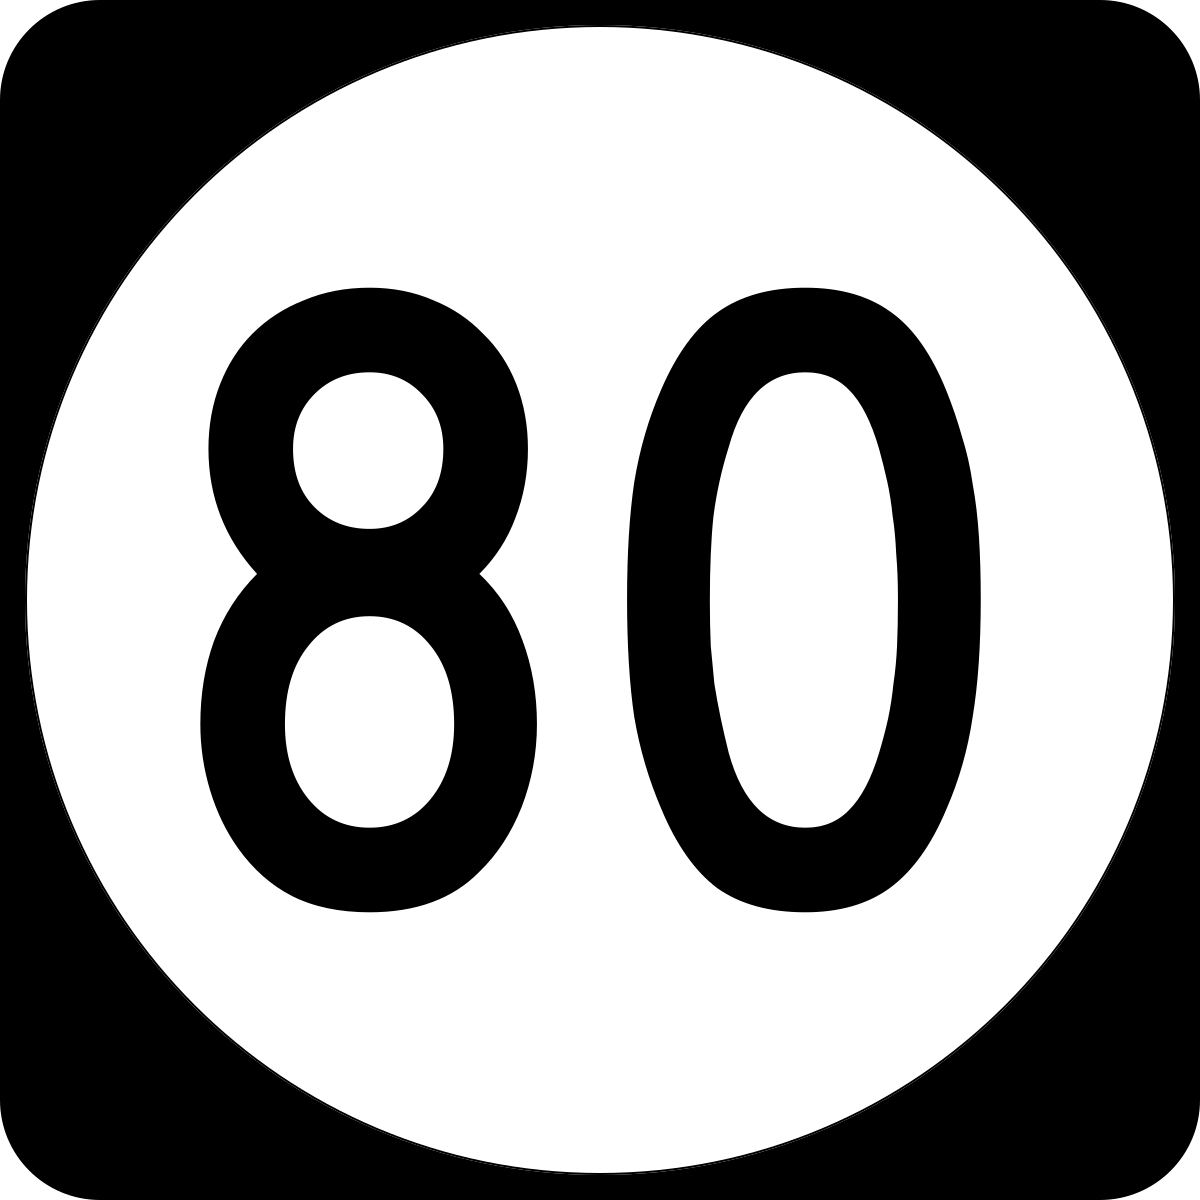 File:Elongated circle 80.svg - Wikipedia